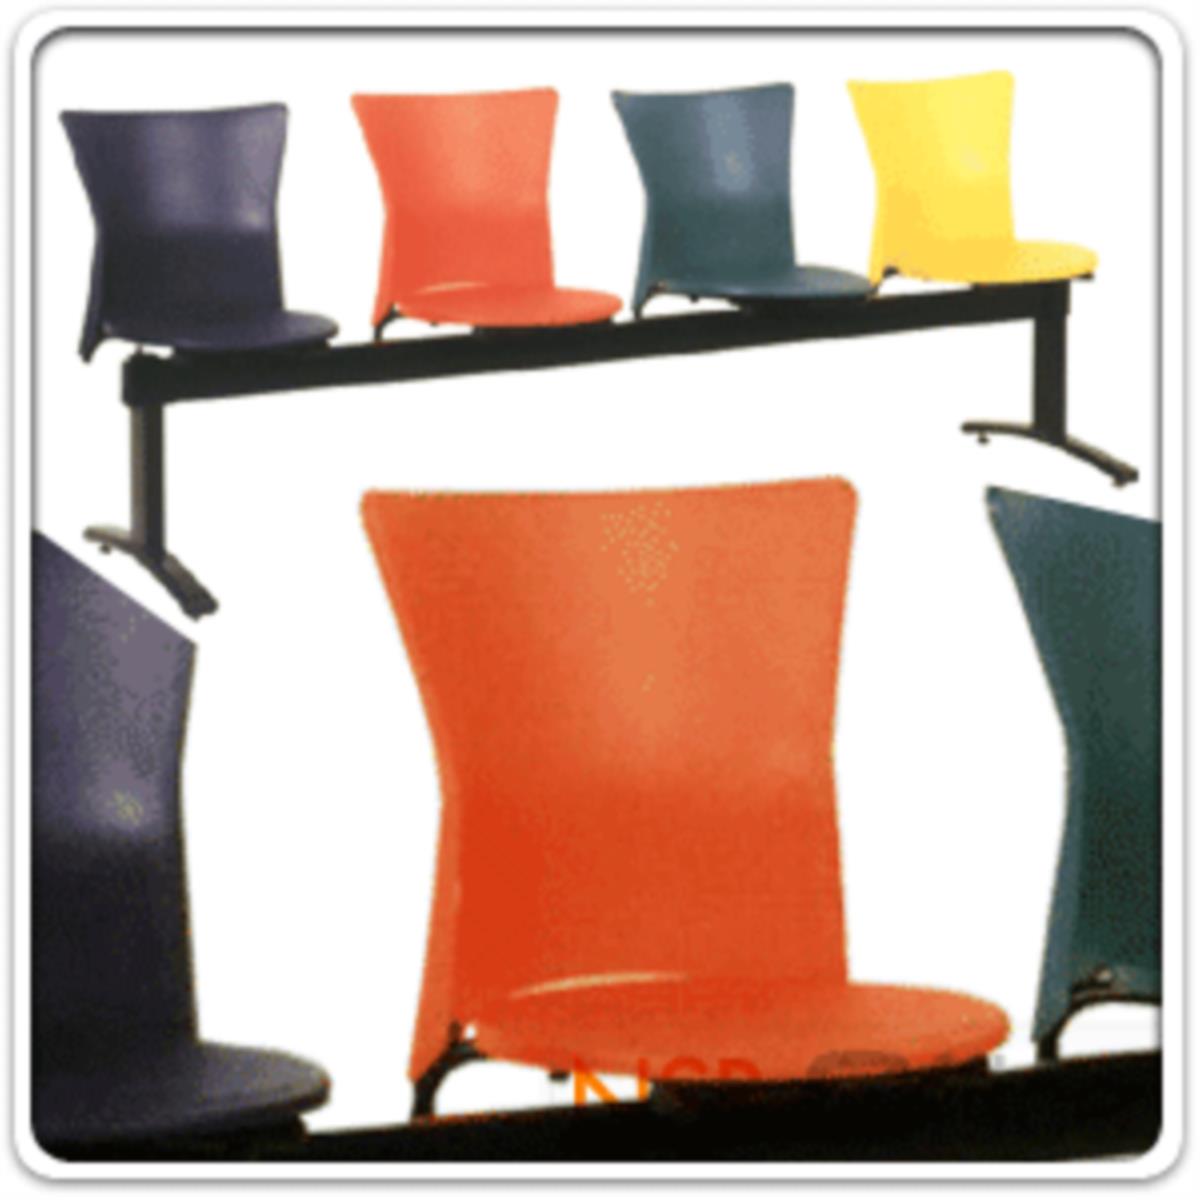 เก้าอี้นั่งคอยเฟรมโพลี่ทรงถ้วย รุ่น B321 2 ,3 ,4 ที่นั่ง ขนาด 94W ,150W ,205W cm. ขาเหล็ก